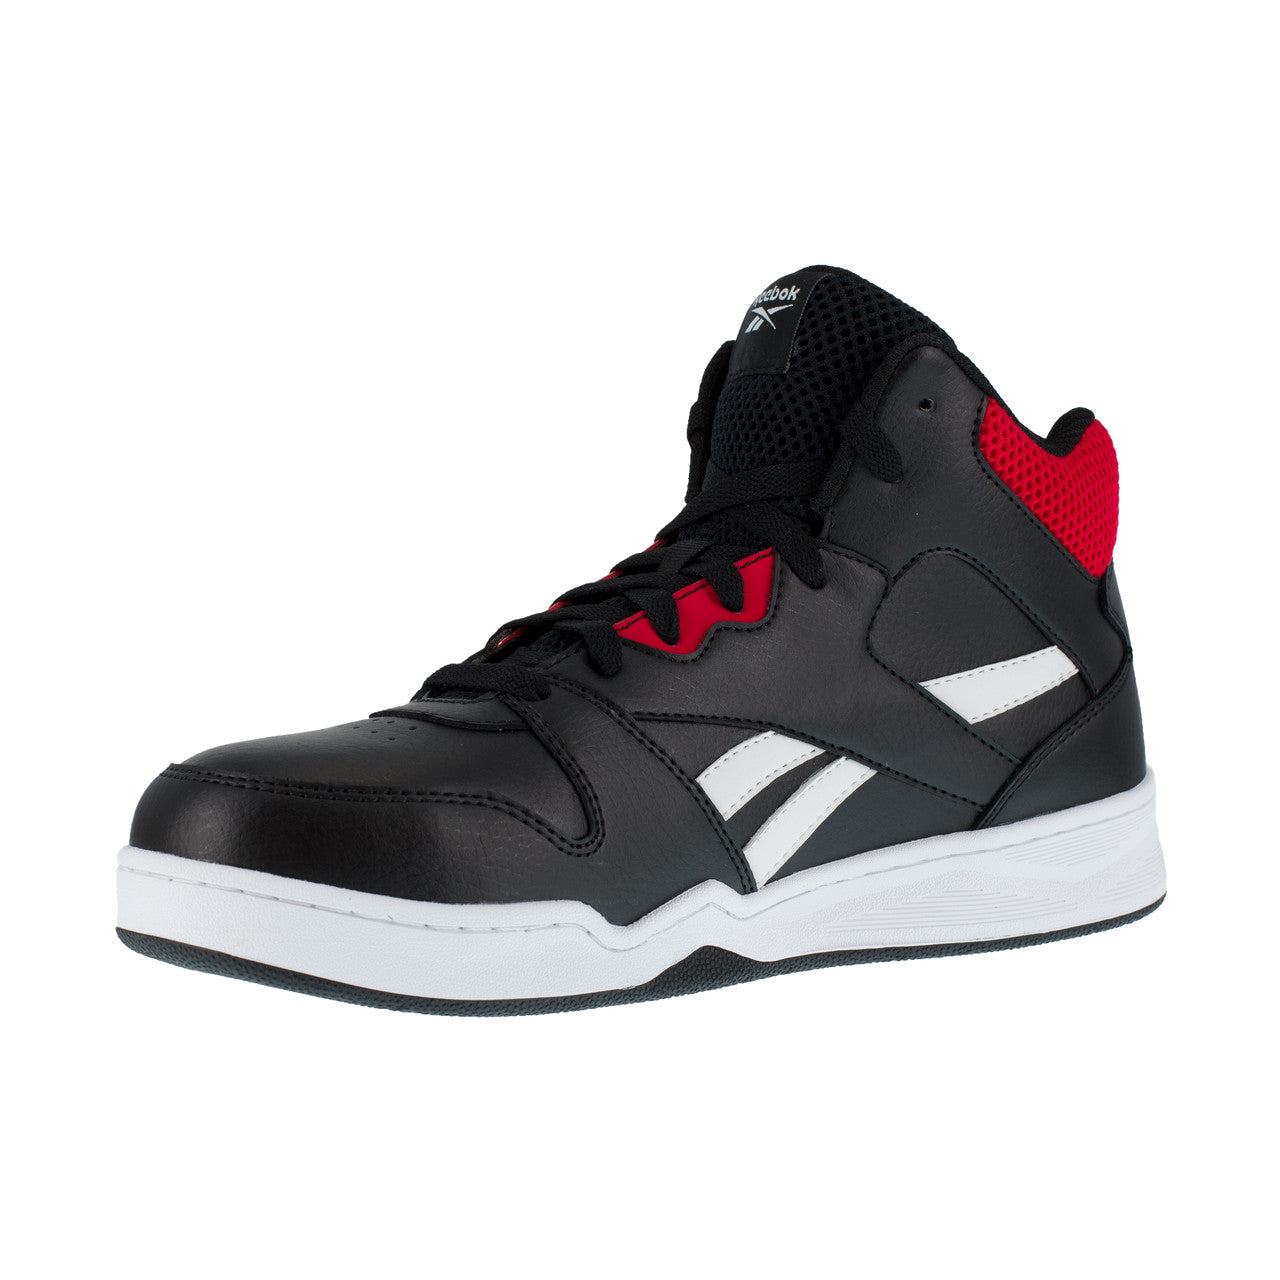 Zapato de seguridad de caña alta Negra y Roja Reebok IB4132S3  - 4